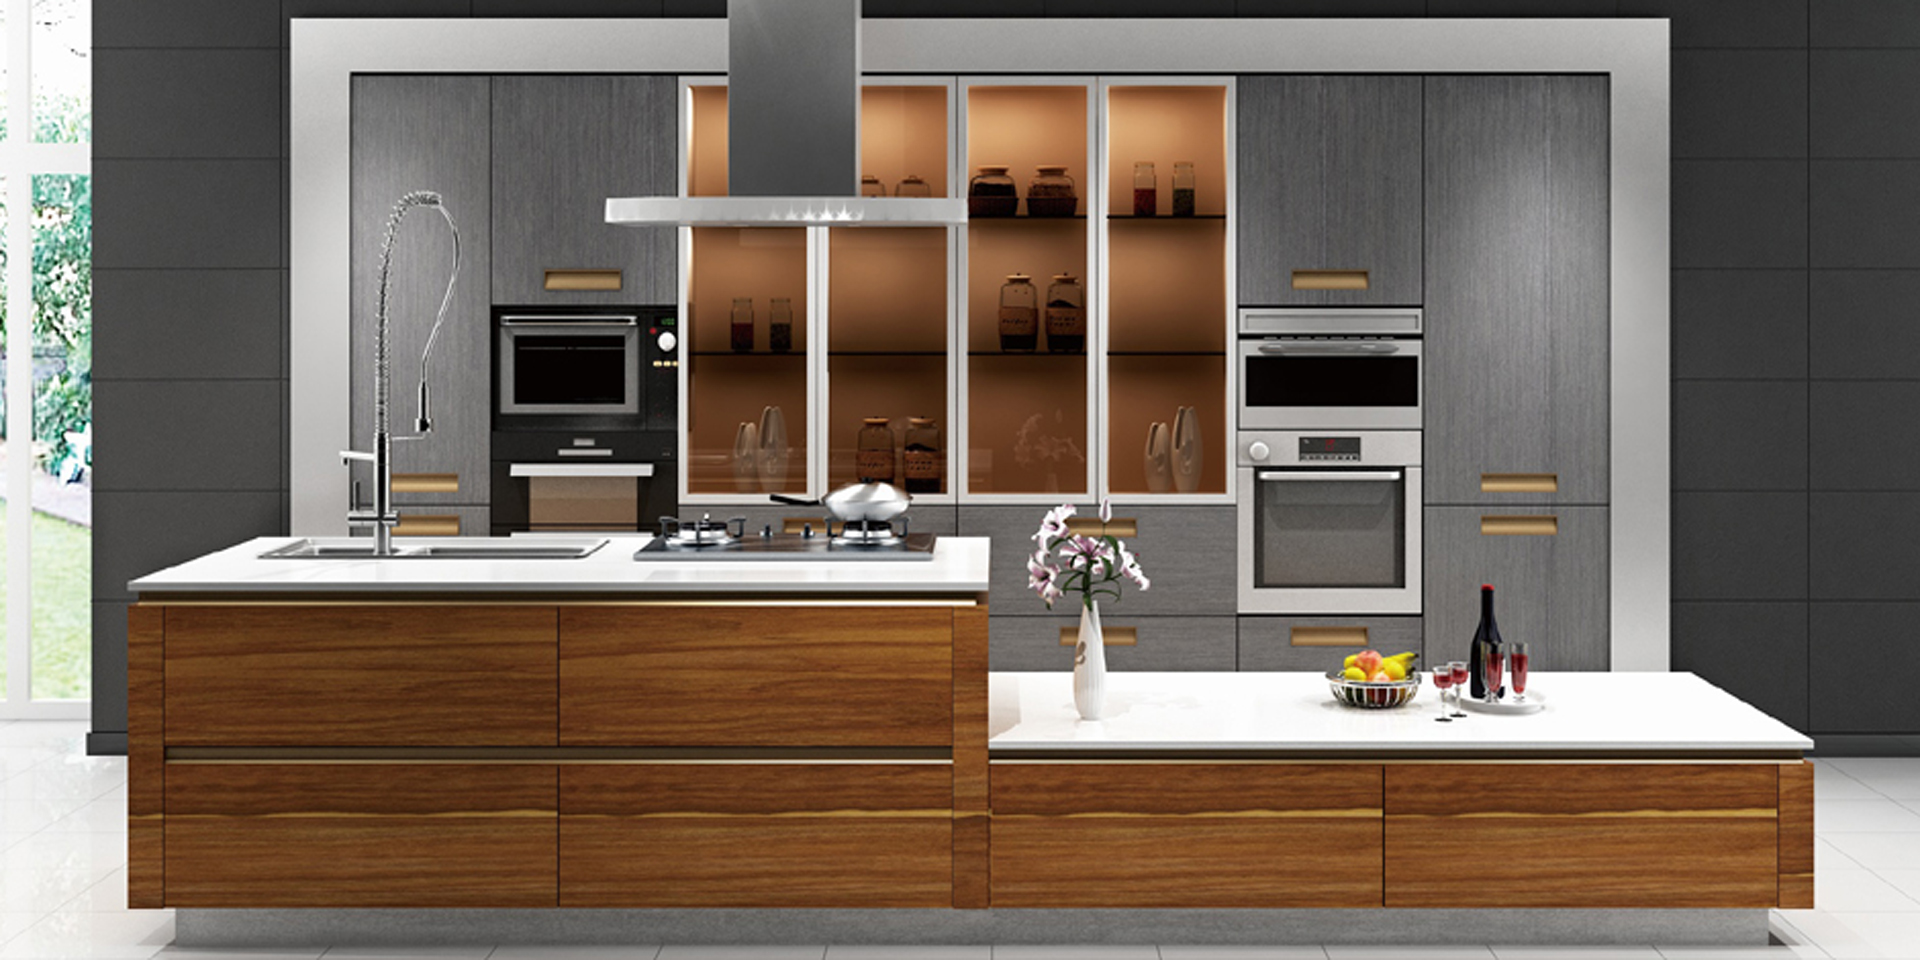 wood grain melamine modern kitchen cabinet.jpg